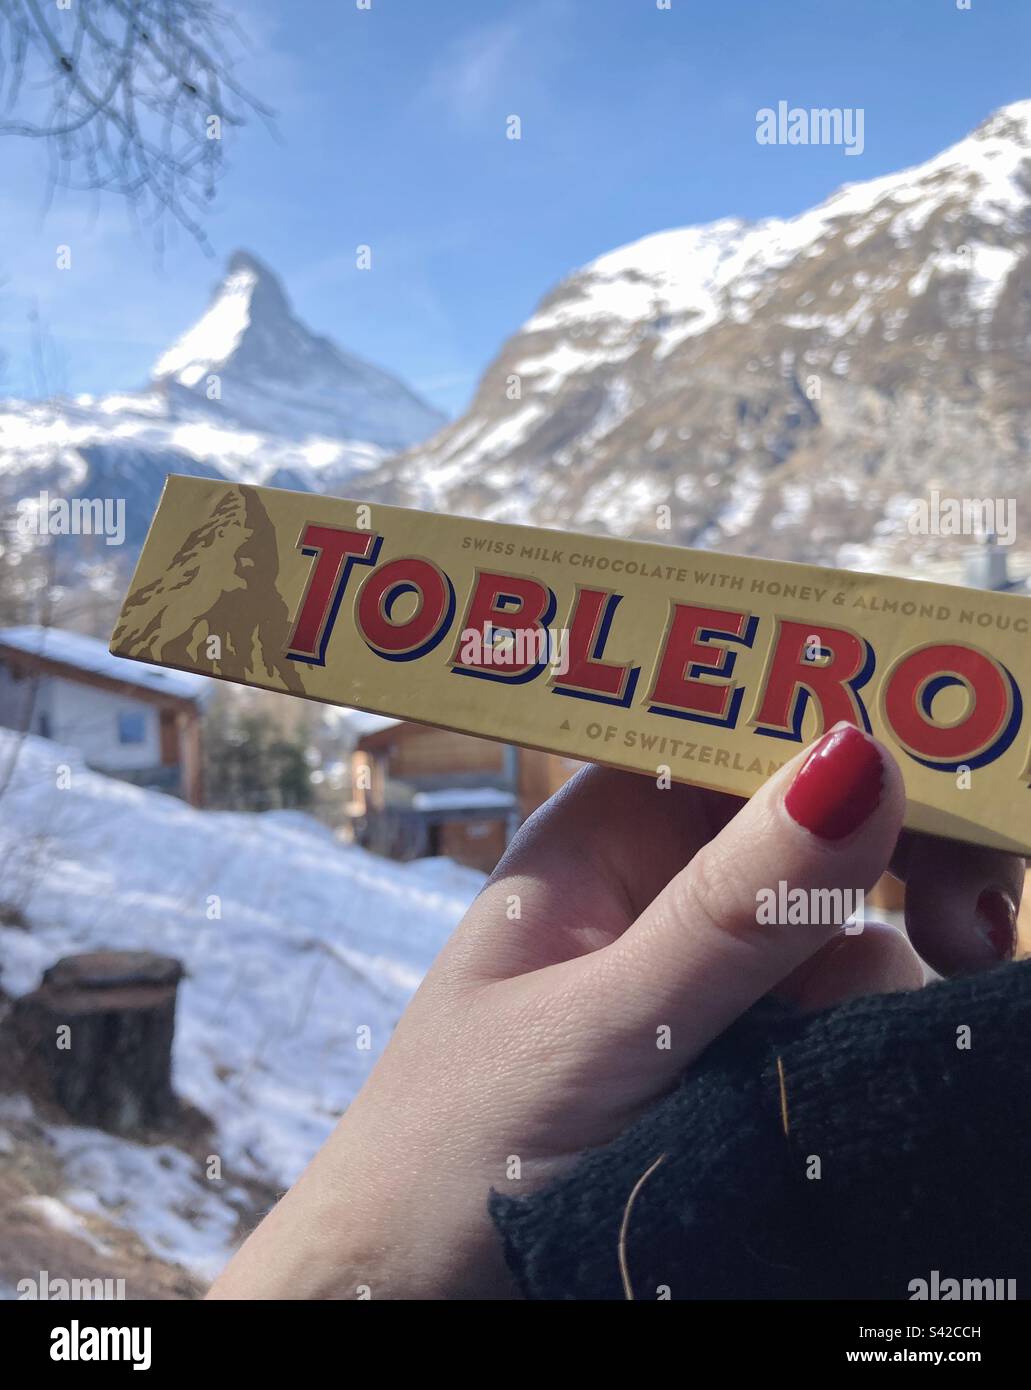 Die Toblerone Bar wird vor dem Matterhorn gehalten, das auf der Verpackung steht. Stockfoto